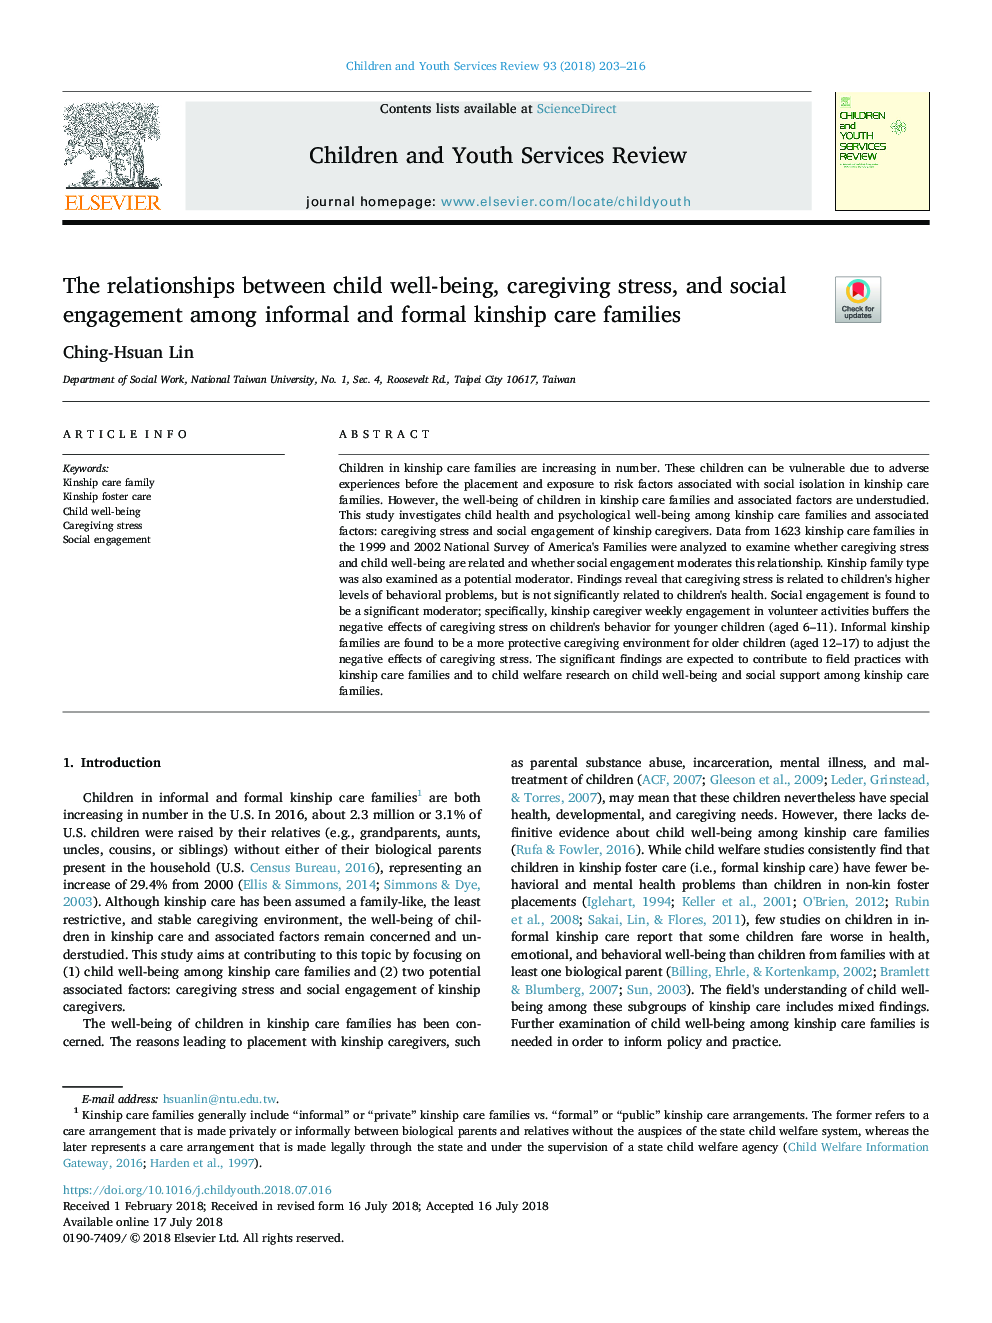 روابط بین رفاه فرزندان، استرس مراقبت و مشارکت اجتماعی در خانواده های مراقبت های نسل غیر رسمی و رسمی 